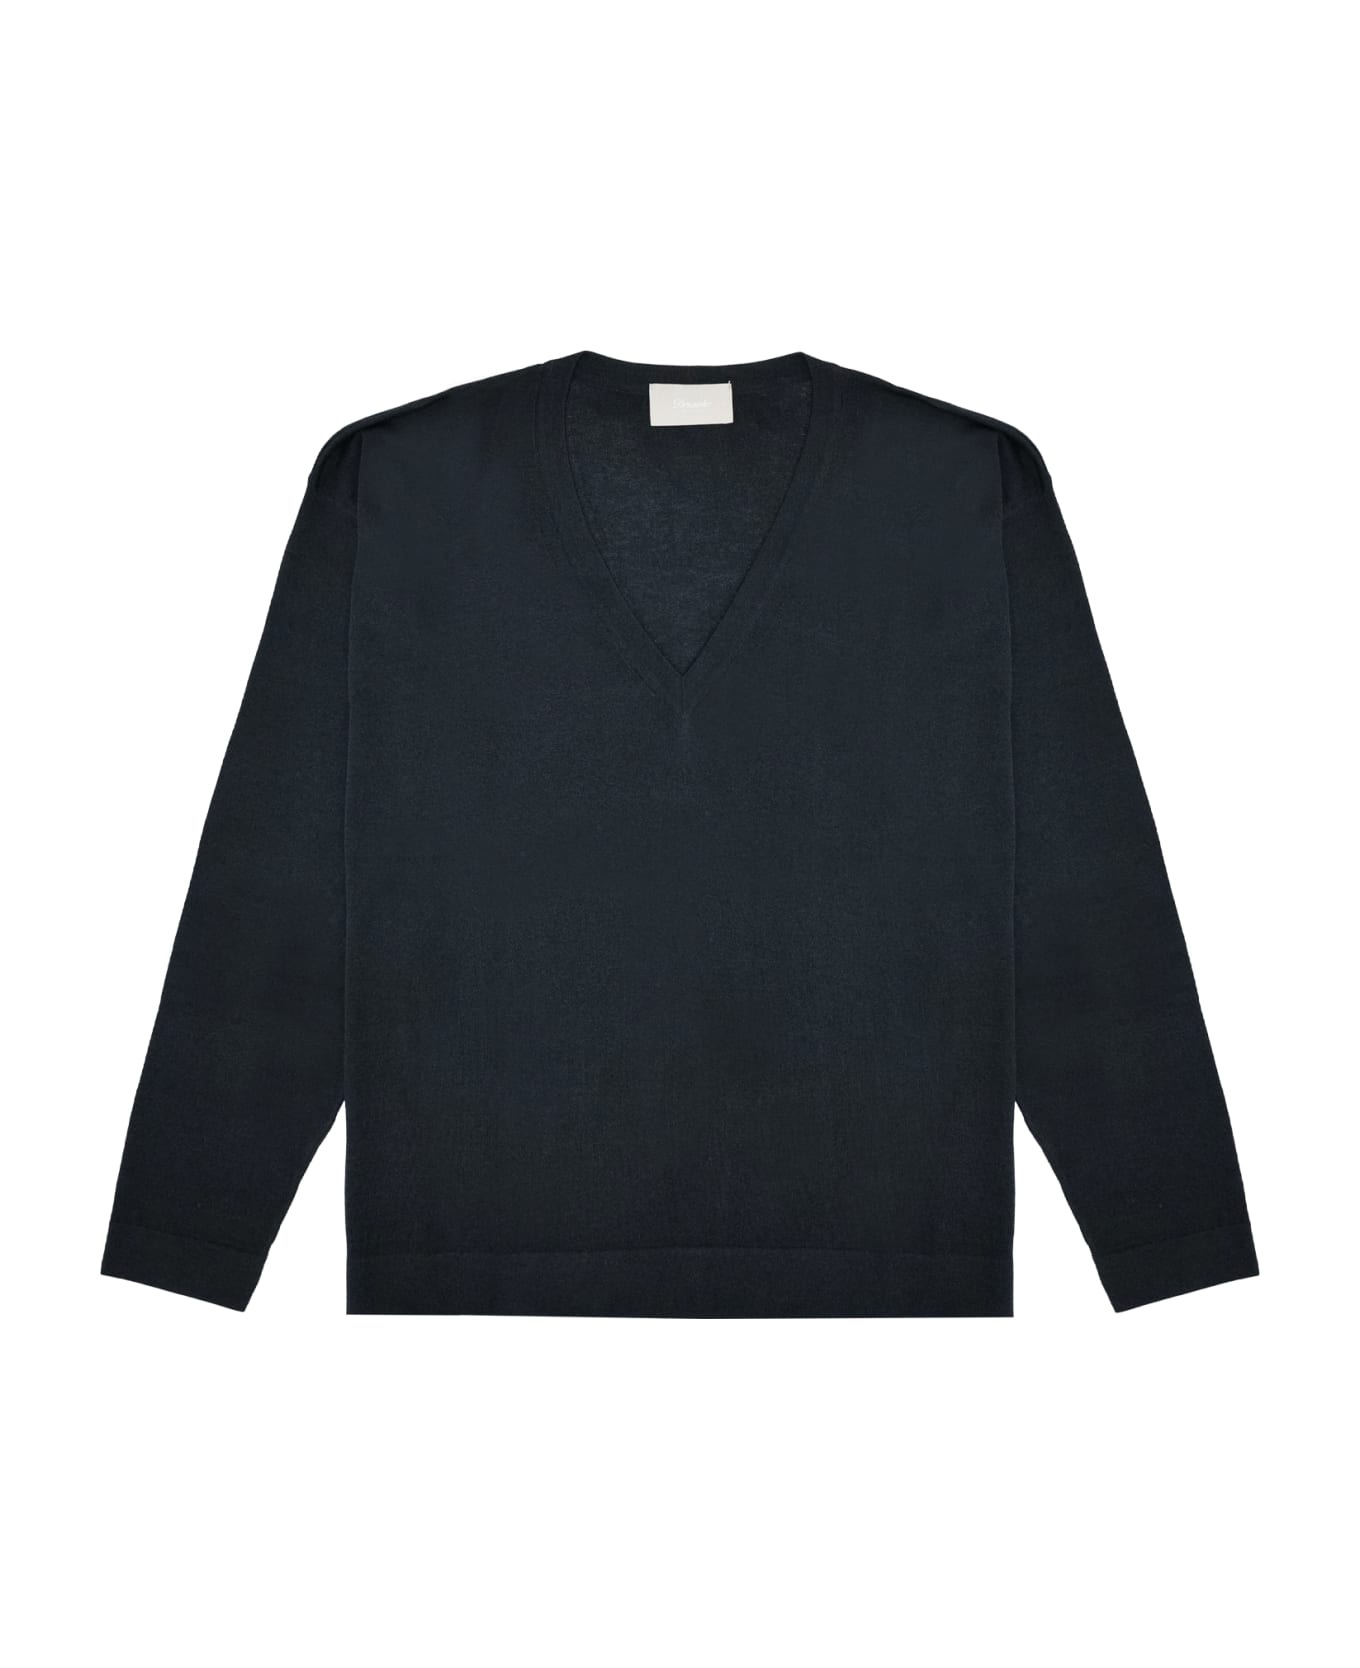 Drumohr Sweater - Black フリース